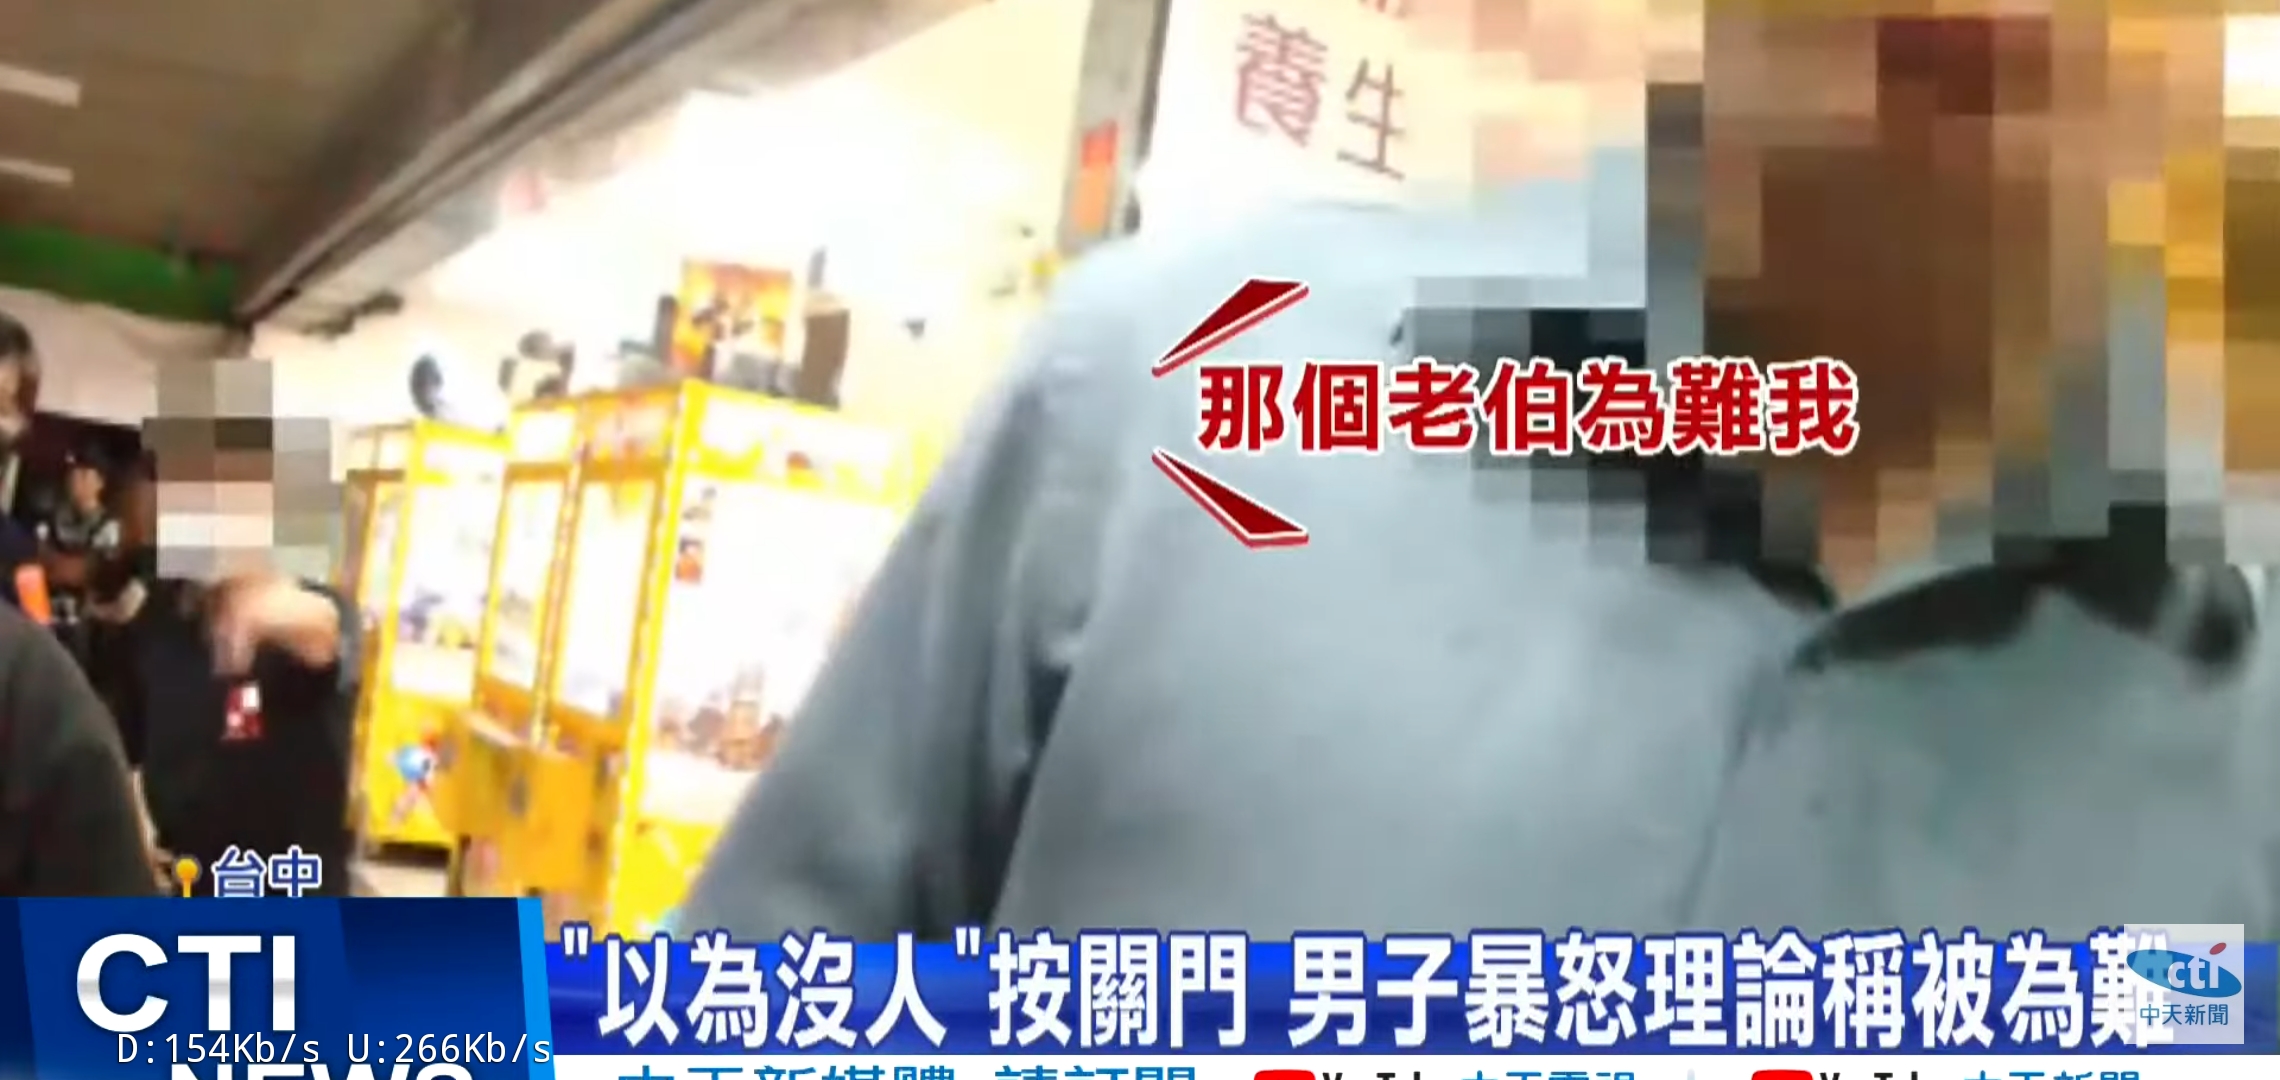 Re: [新聞] 台中西屯男被電梯夾到爆氣 欺負阿伯